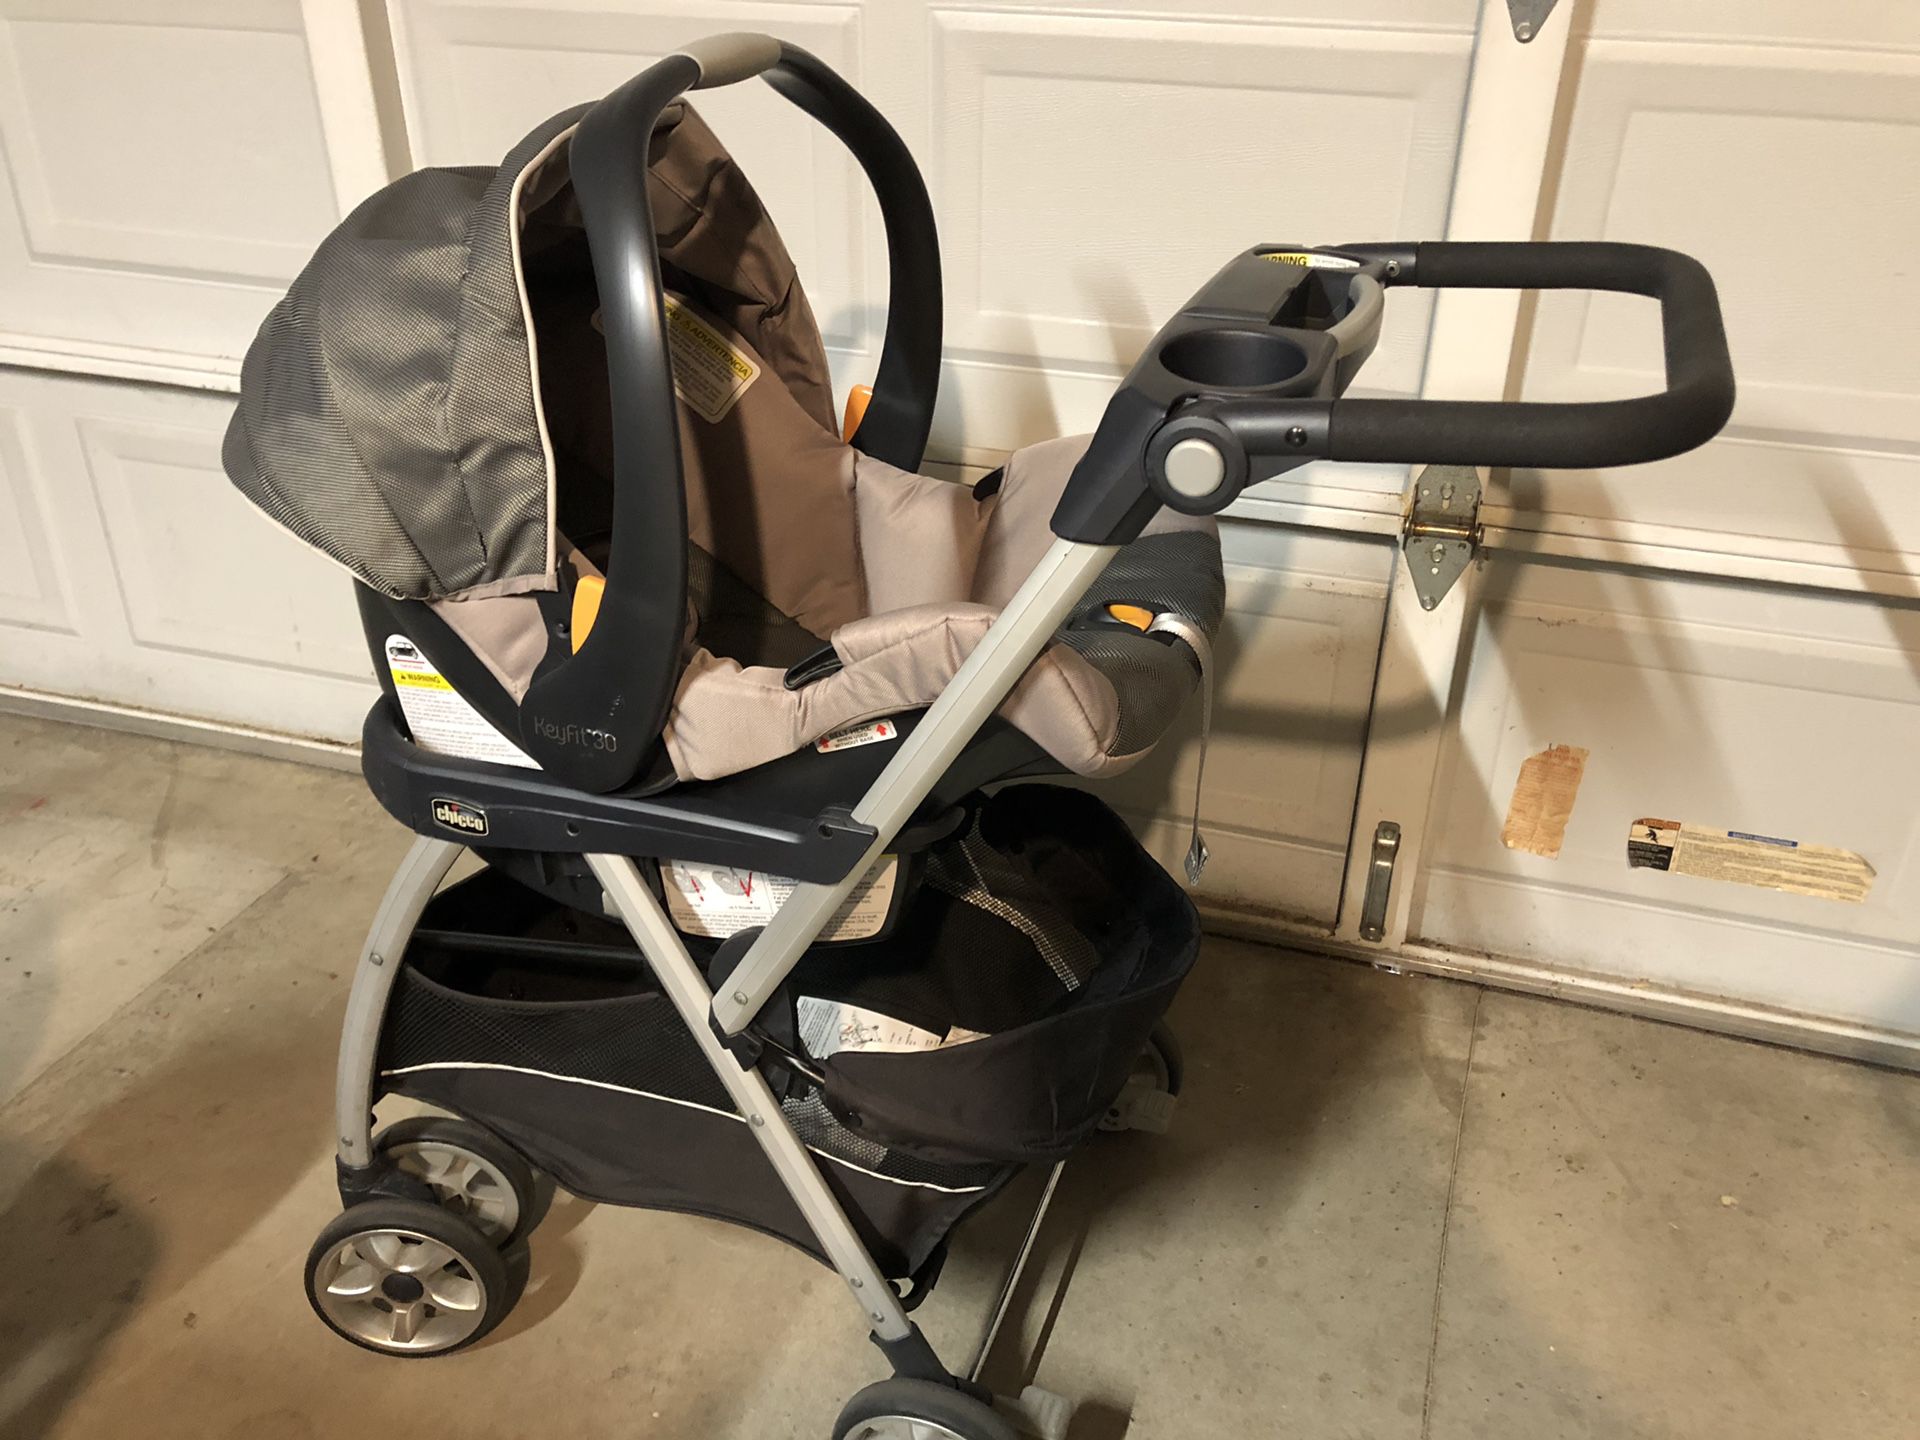 Infant car seat, 2 base, stroller for sale